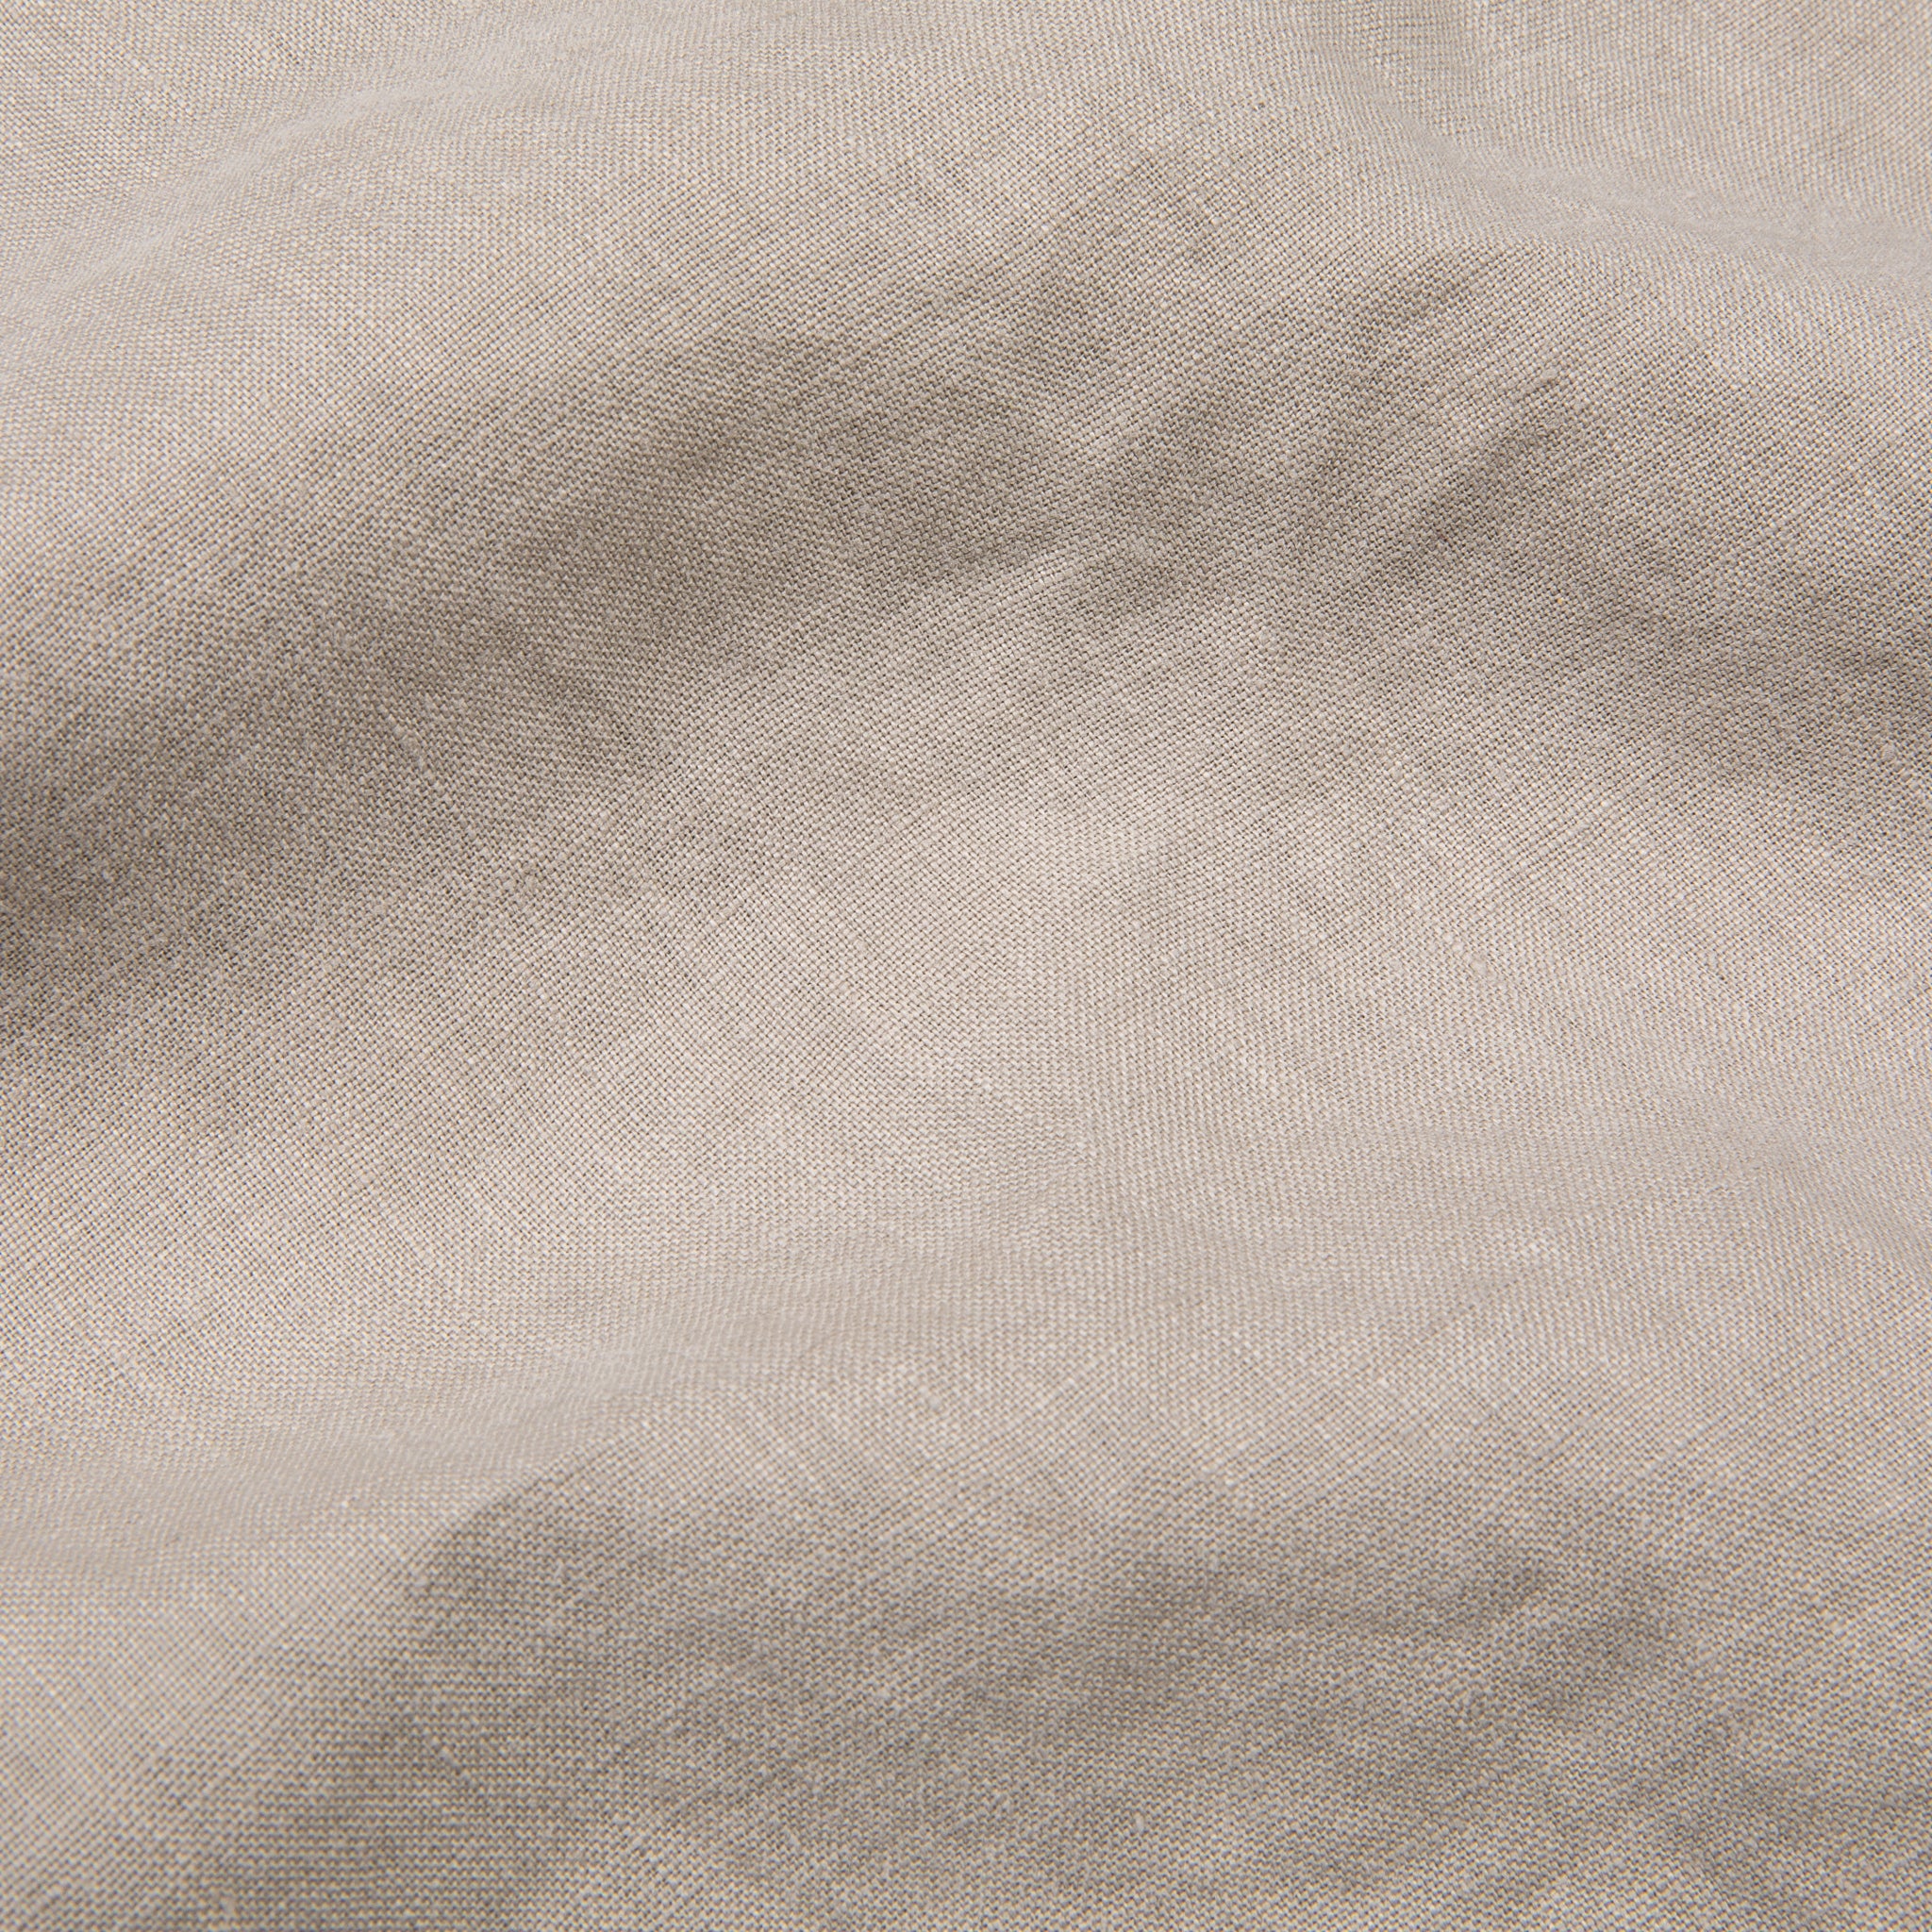 James Perse Classic Linen shirt Silk